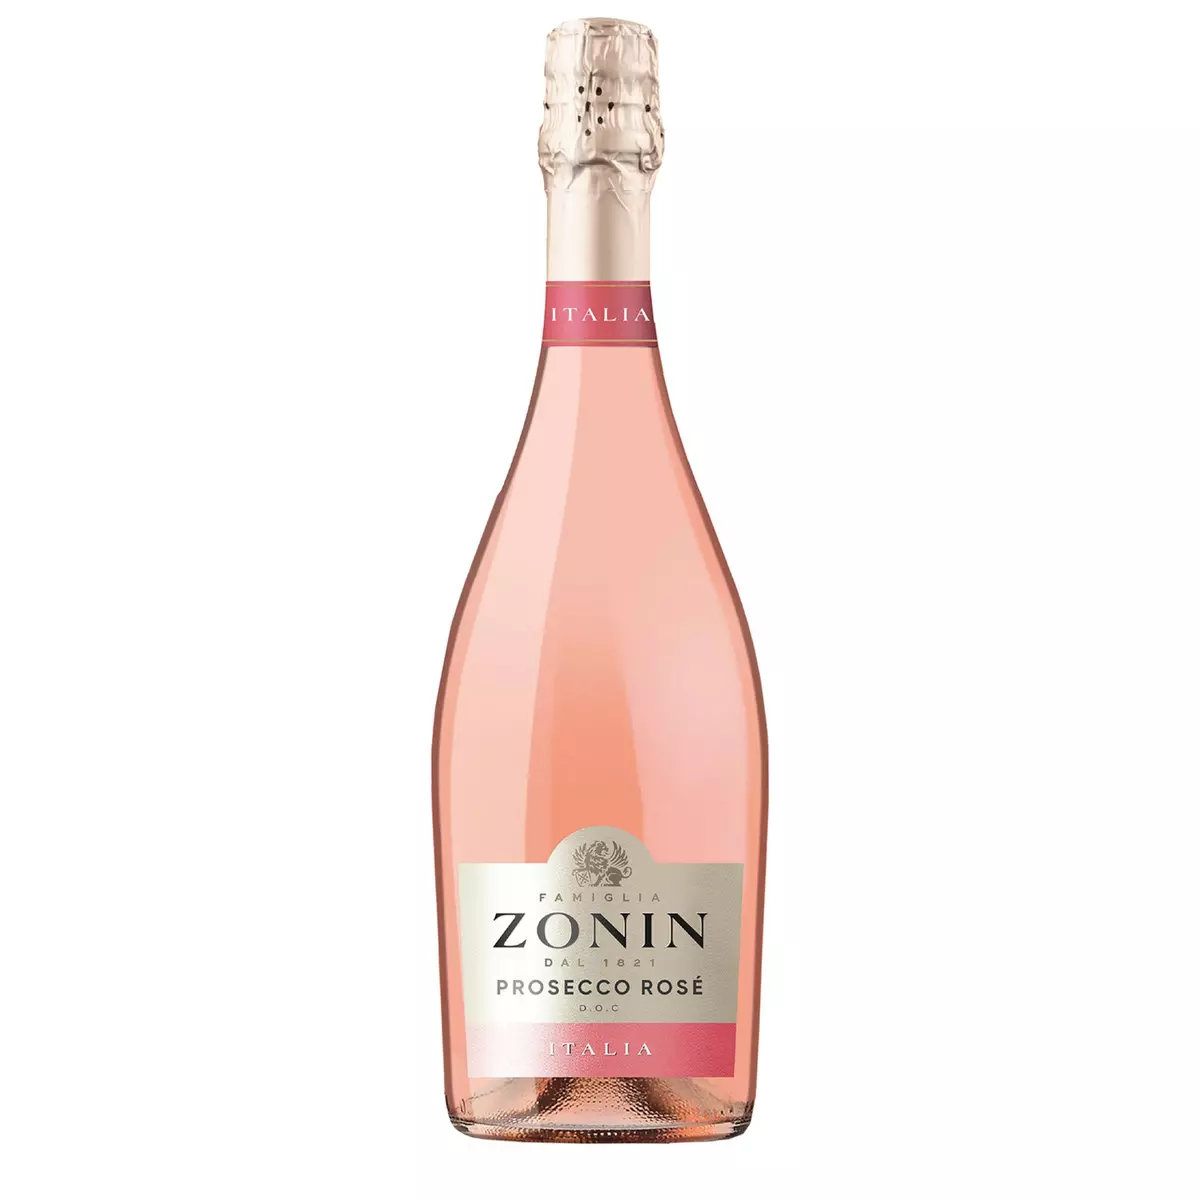 FAMIGLIA ZONIN DOC Vin effervescent Prosecco Zonin rosé 75cl